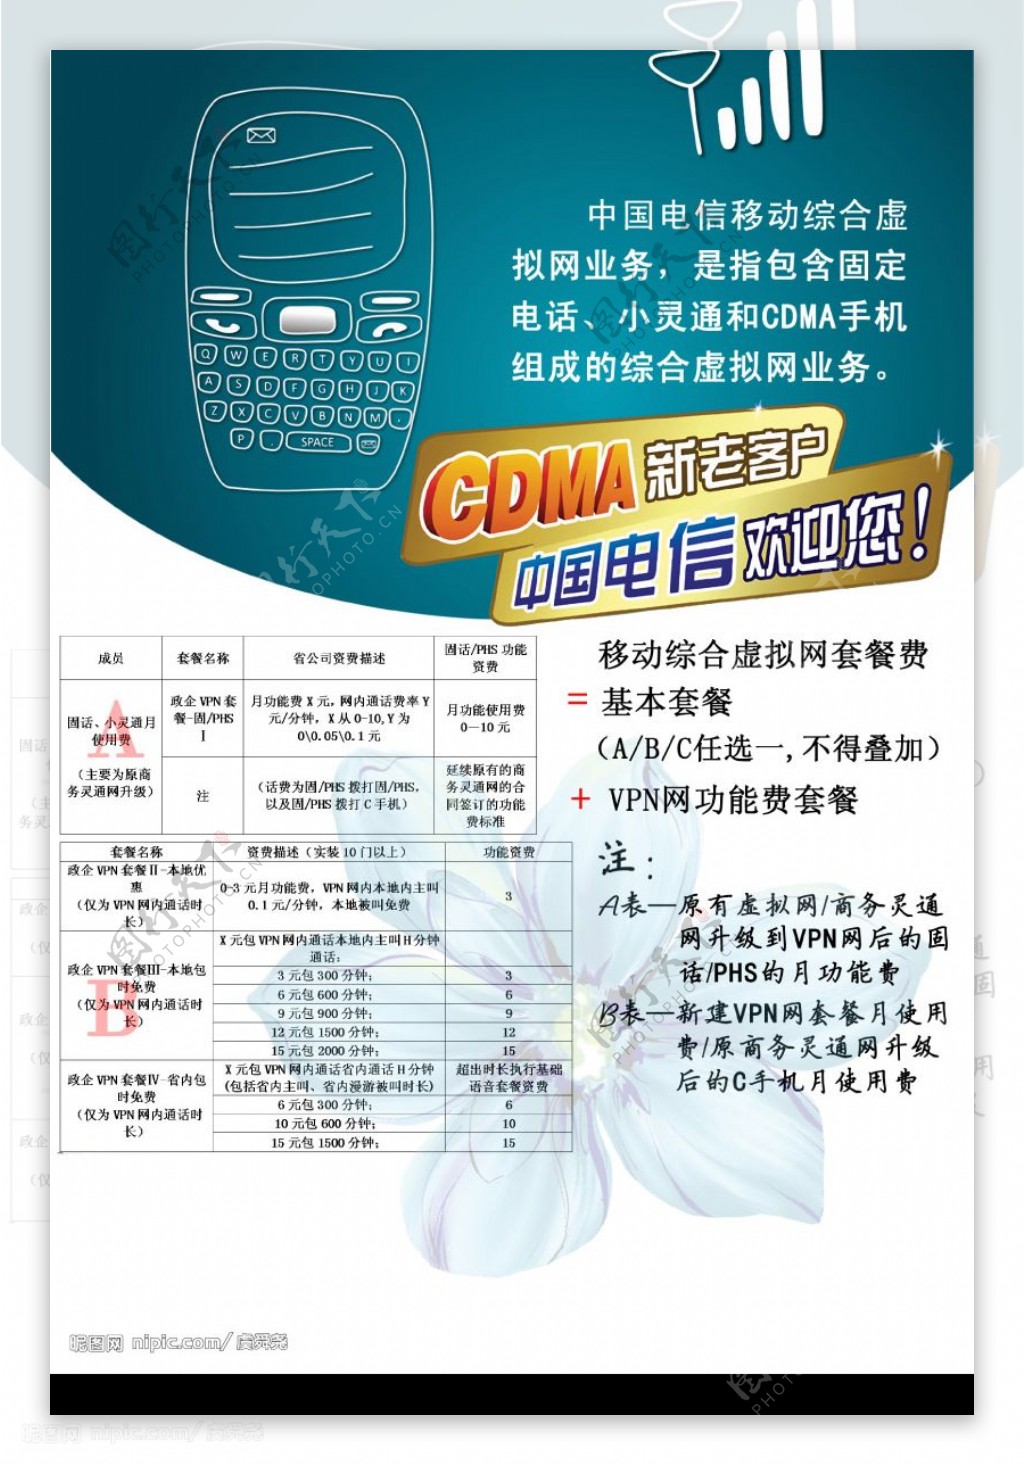 六合电信CDMA手机手册封底内页图片